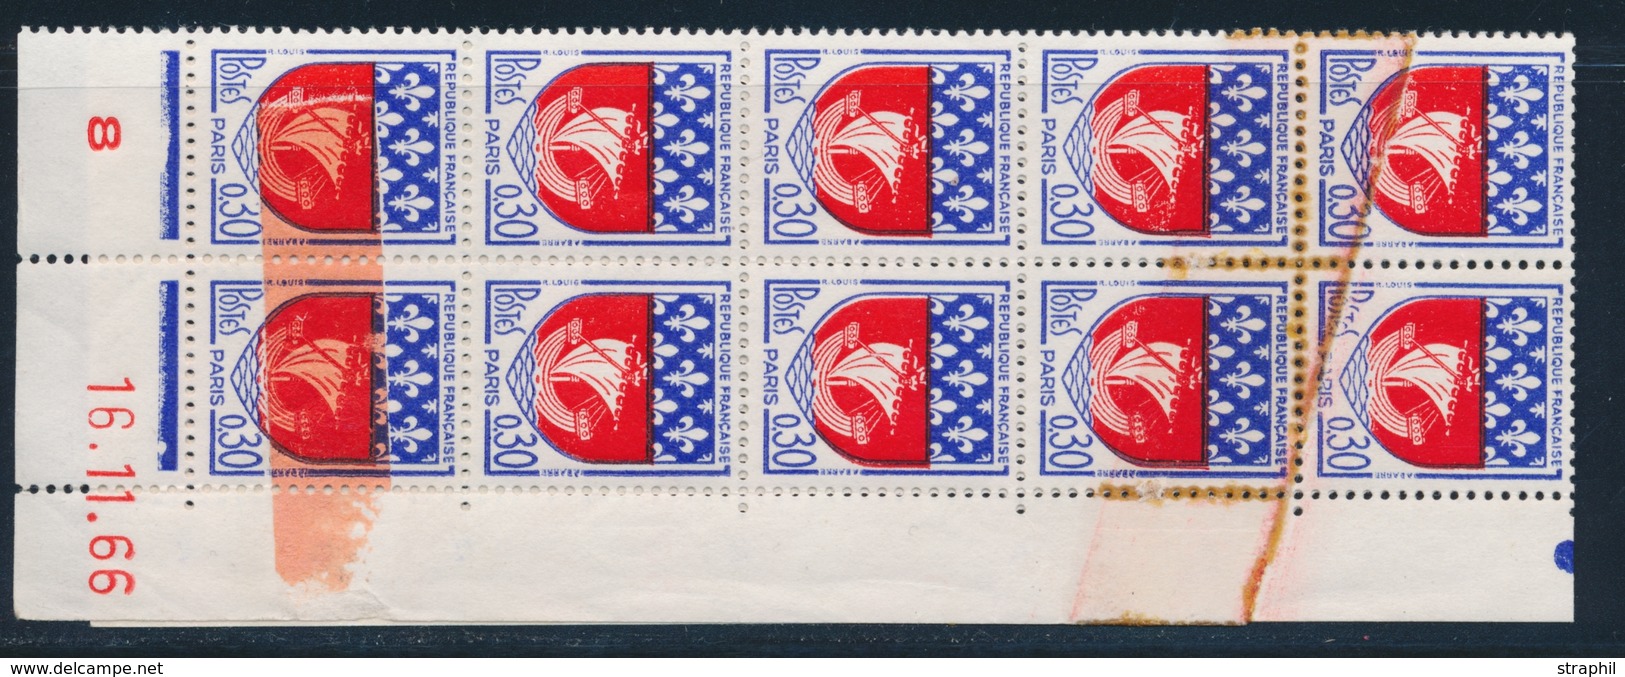 ** N°1354B - Bloc Vertic. De 10 - Daté 16/11/66 - 2 T. Avec Impression S/Raccord + 2 T. Imprimés S/sommet - TB - Unused Stamps